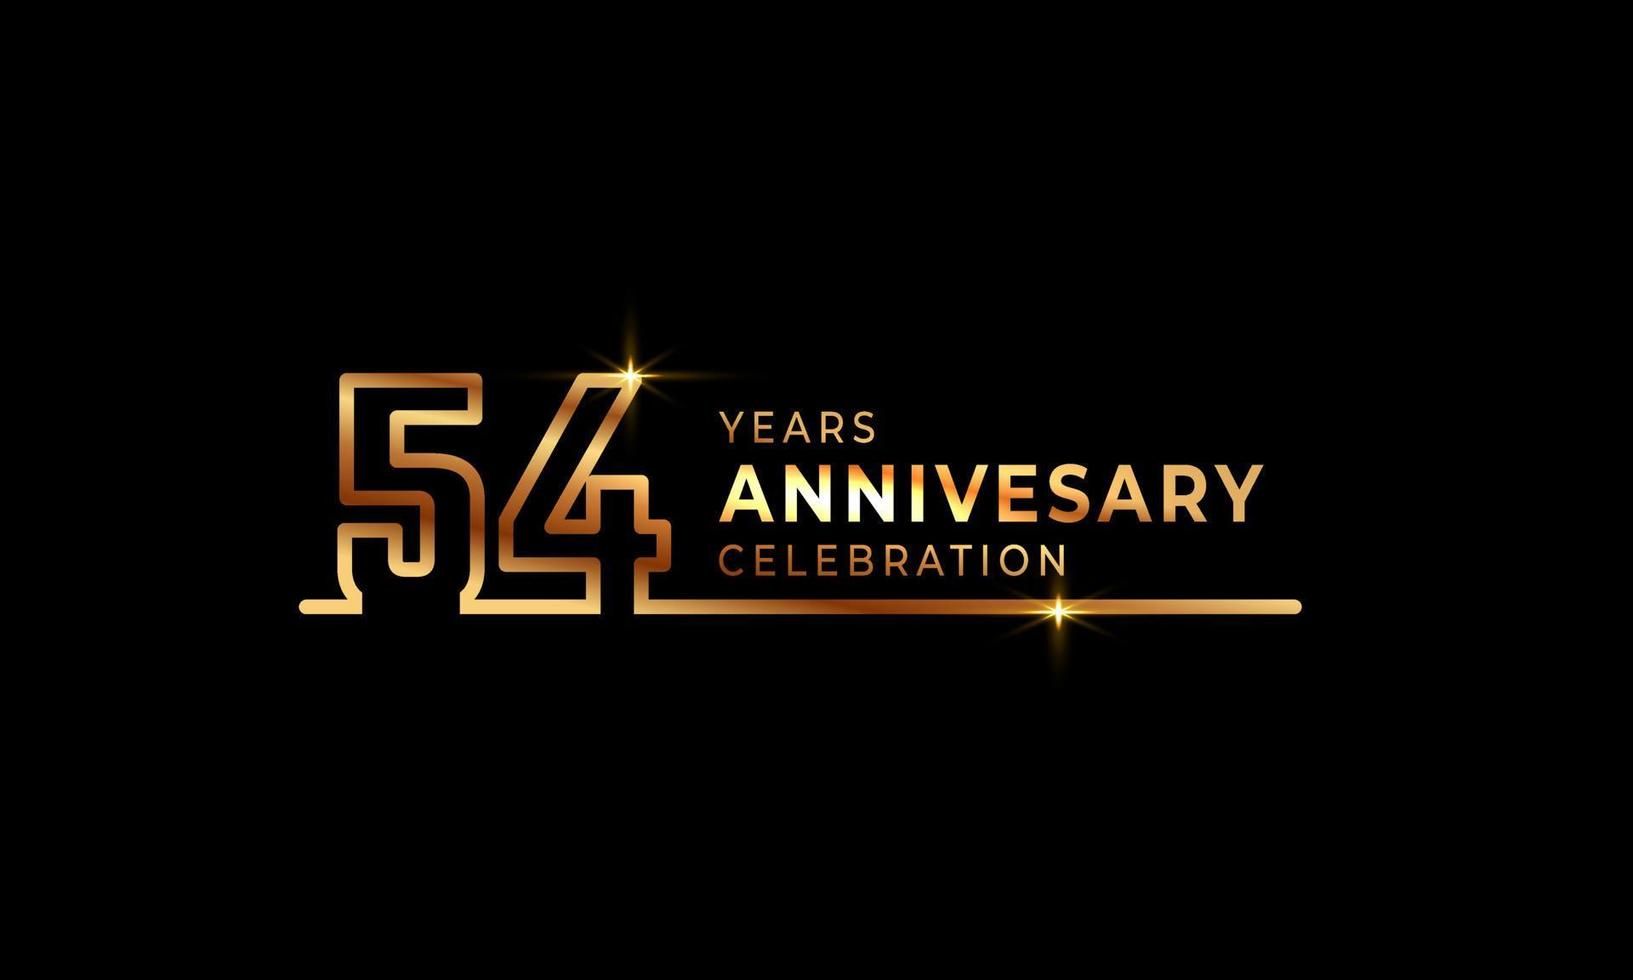 54-jarig jubileumviering logo met gouden gekleurde lettertypenummers gemaakt van één verbonden lijn voor feestgebeurtenis, bruiloft, wenskaart en uitnodiging geïsoleerd op donkere achtergrond vector